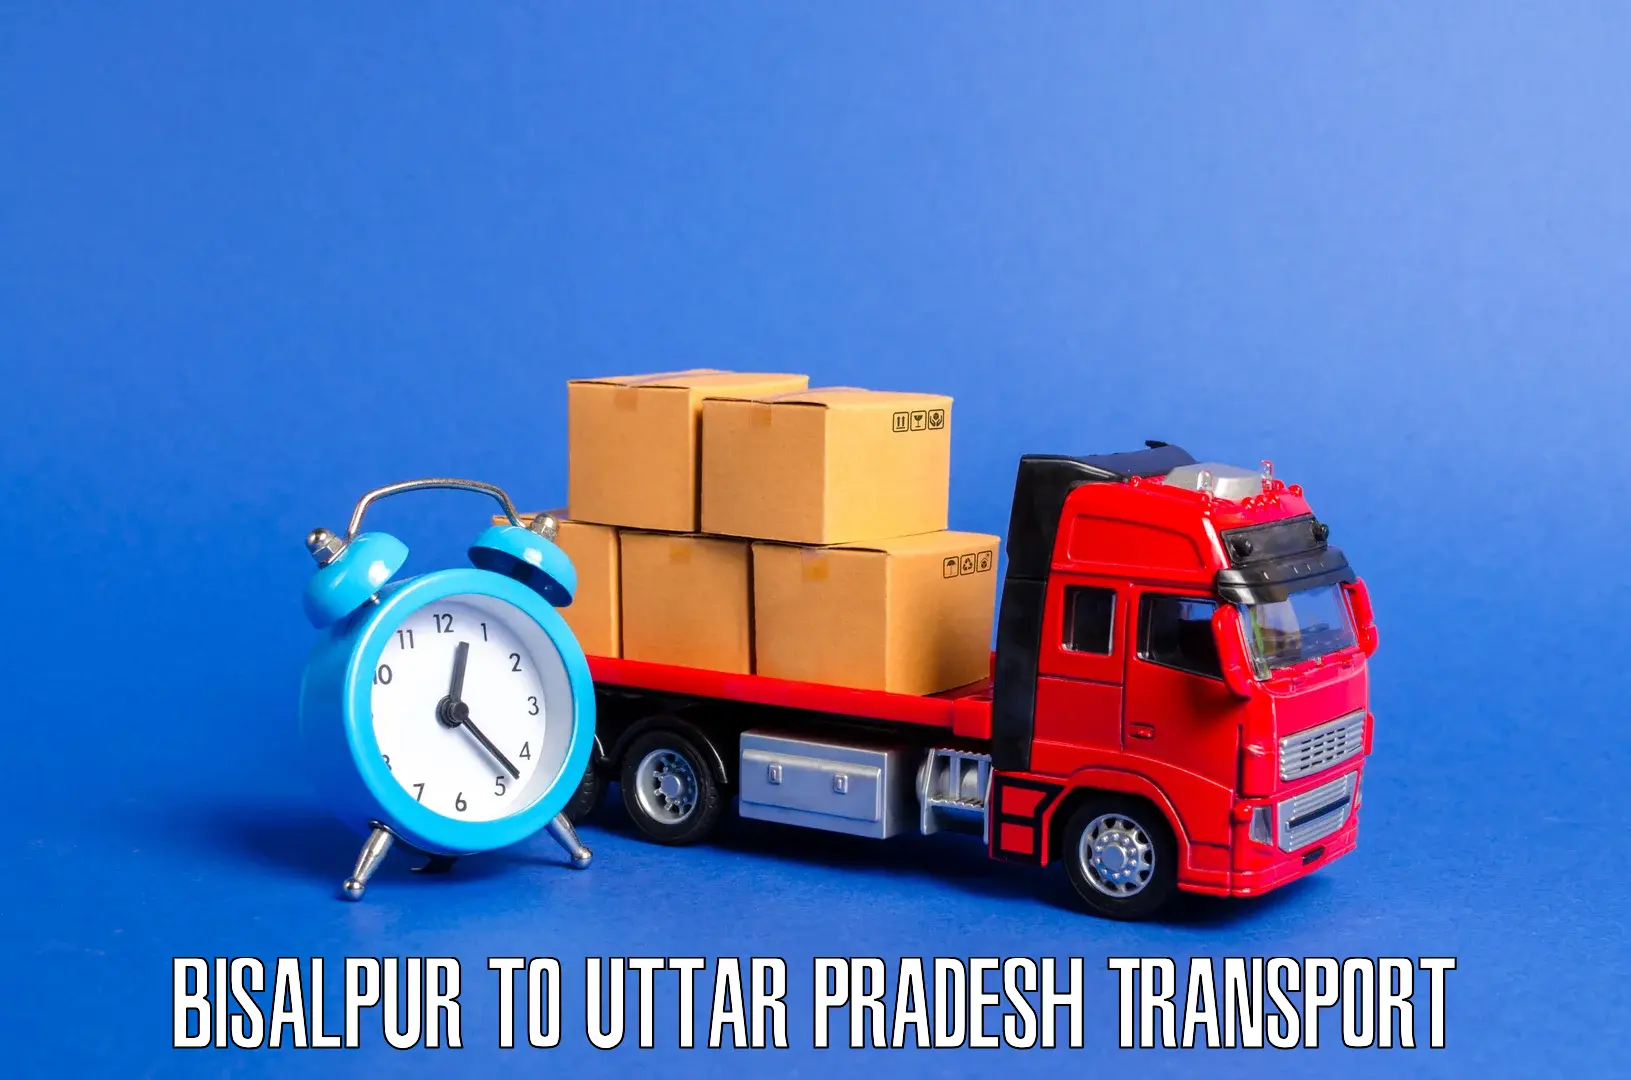 Pick up transport service Bisalpur to Gauriganj